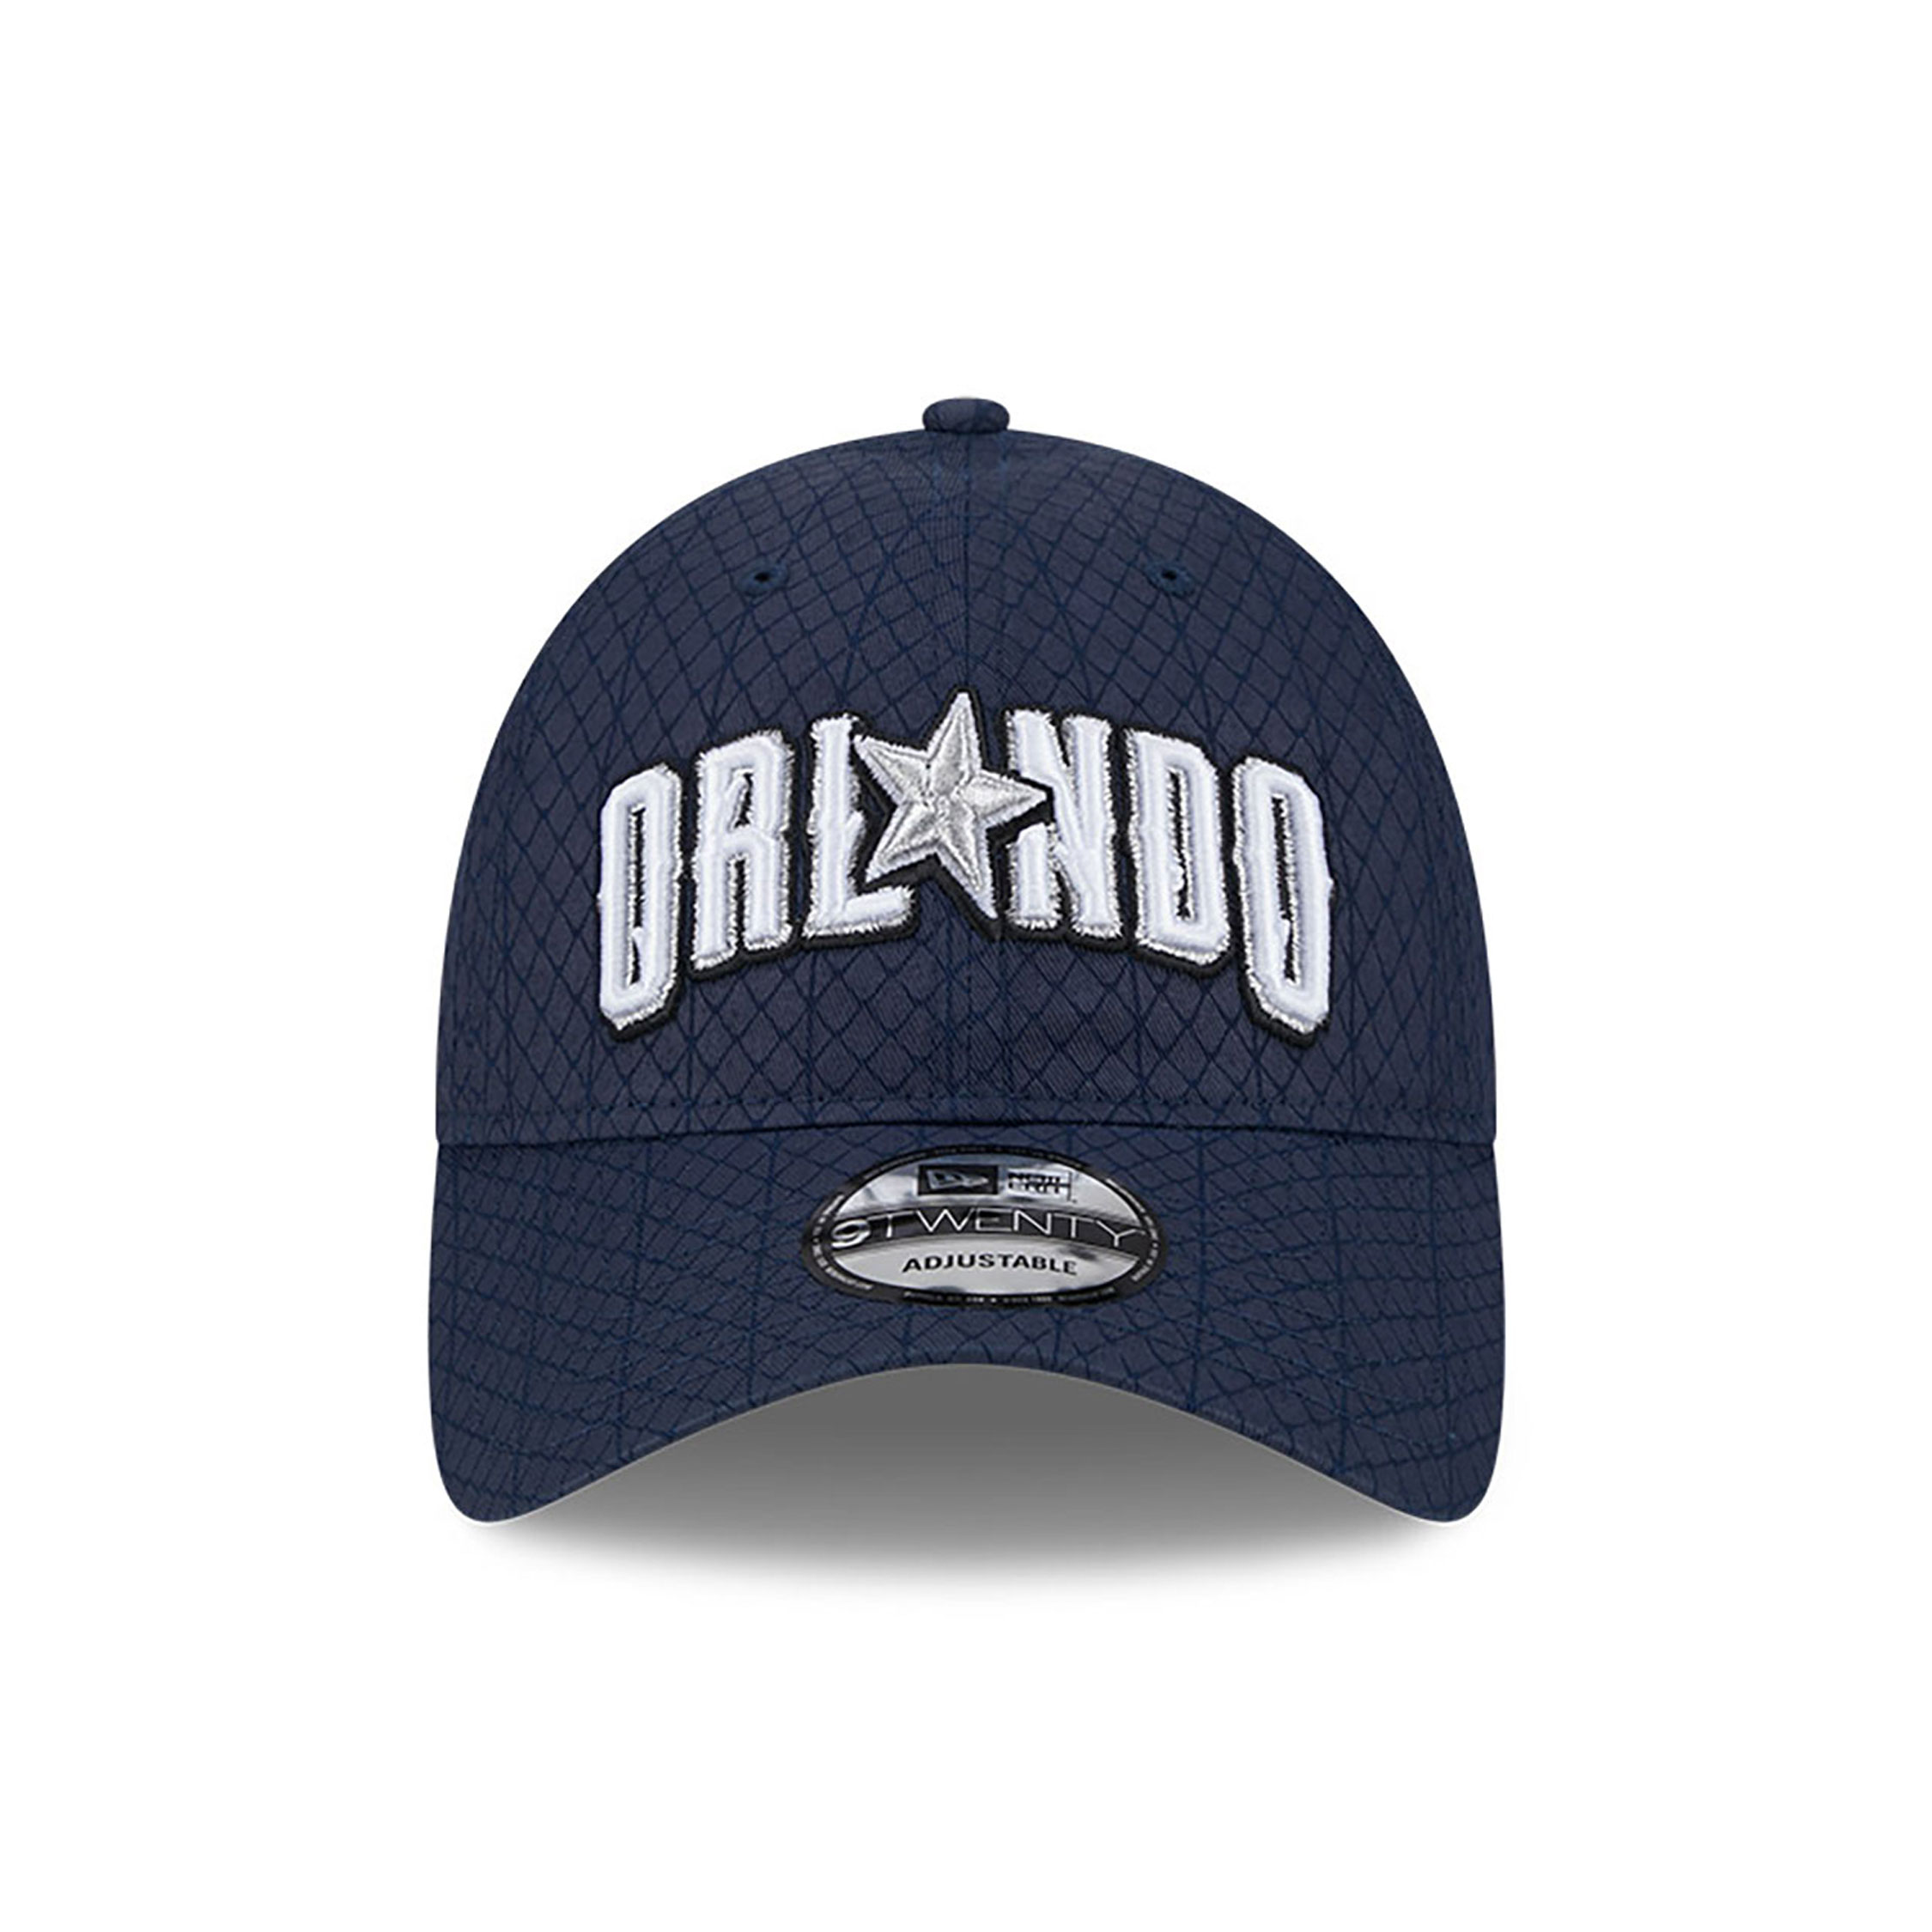 Orlando Magic NBA City Edition Navy 9TWENTY Adjustable Cap